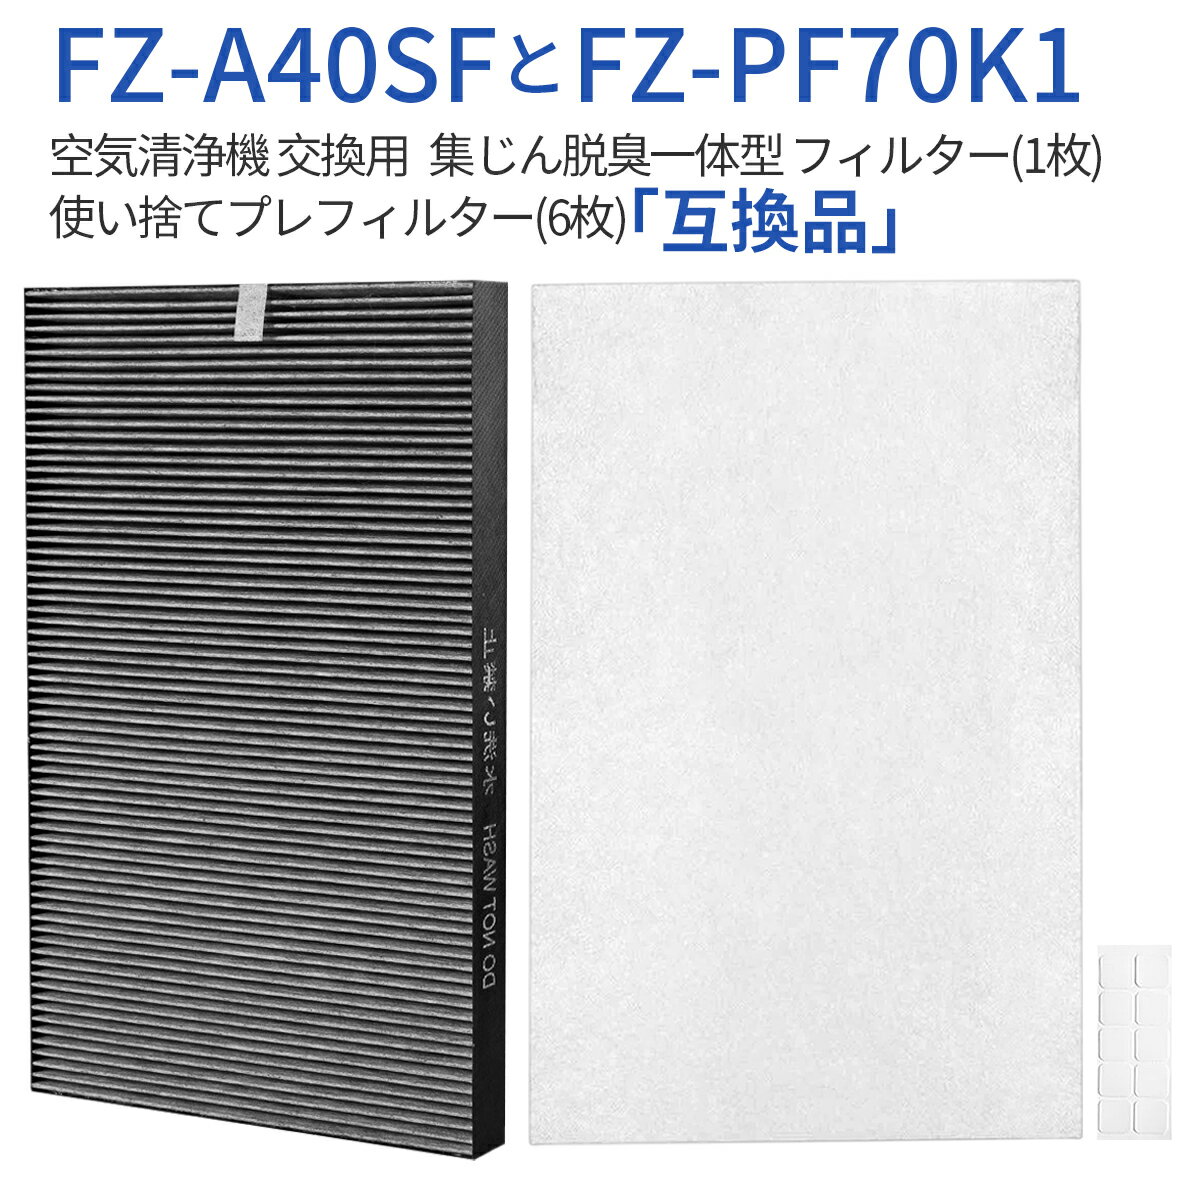 FZ-A40SF 集じん 脱臭 一体型フィルタ